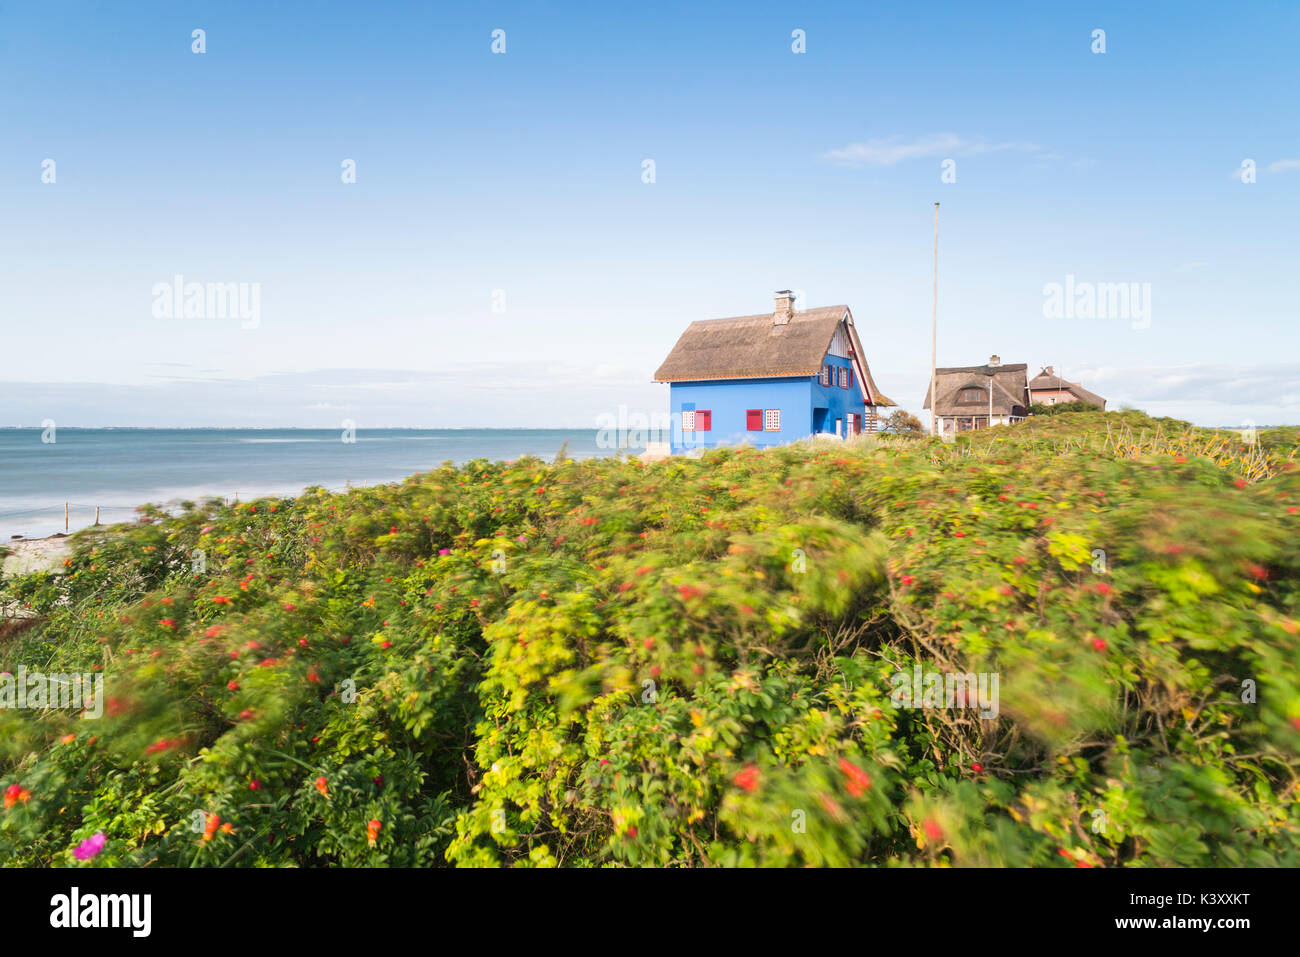 Historisches Strandhaus mit blauer Fassade und Reetdach auf der Halbinsel Graswarder an der Ostseeküste bei Heiligenhafen in Schleswig-Holstein, Deuts Foto Stock